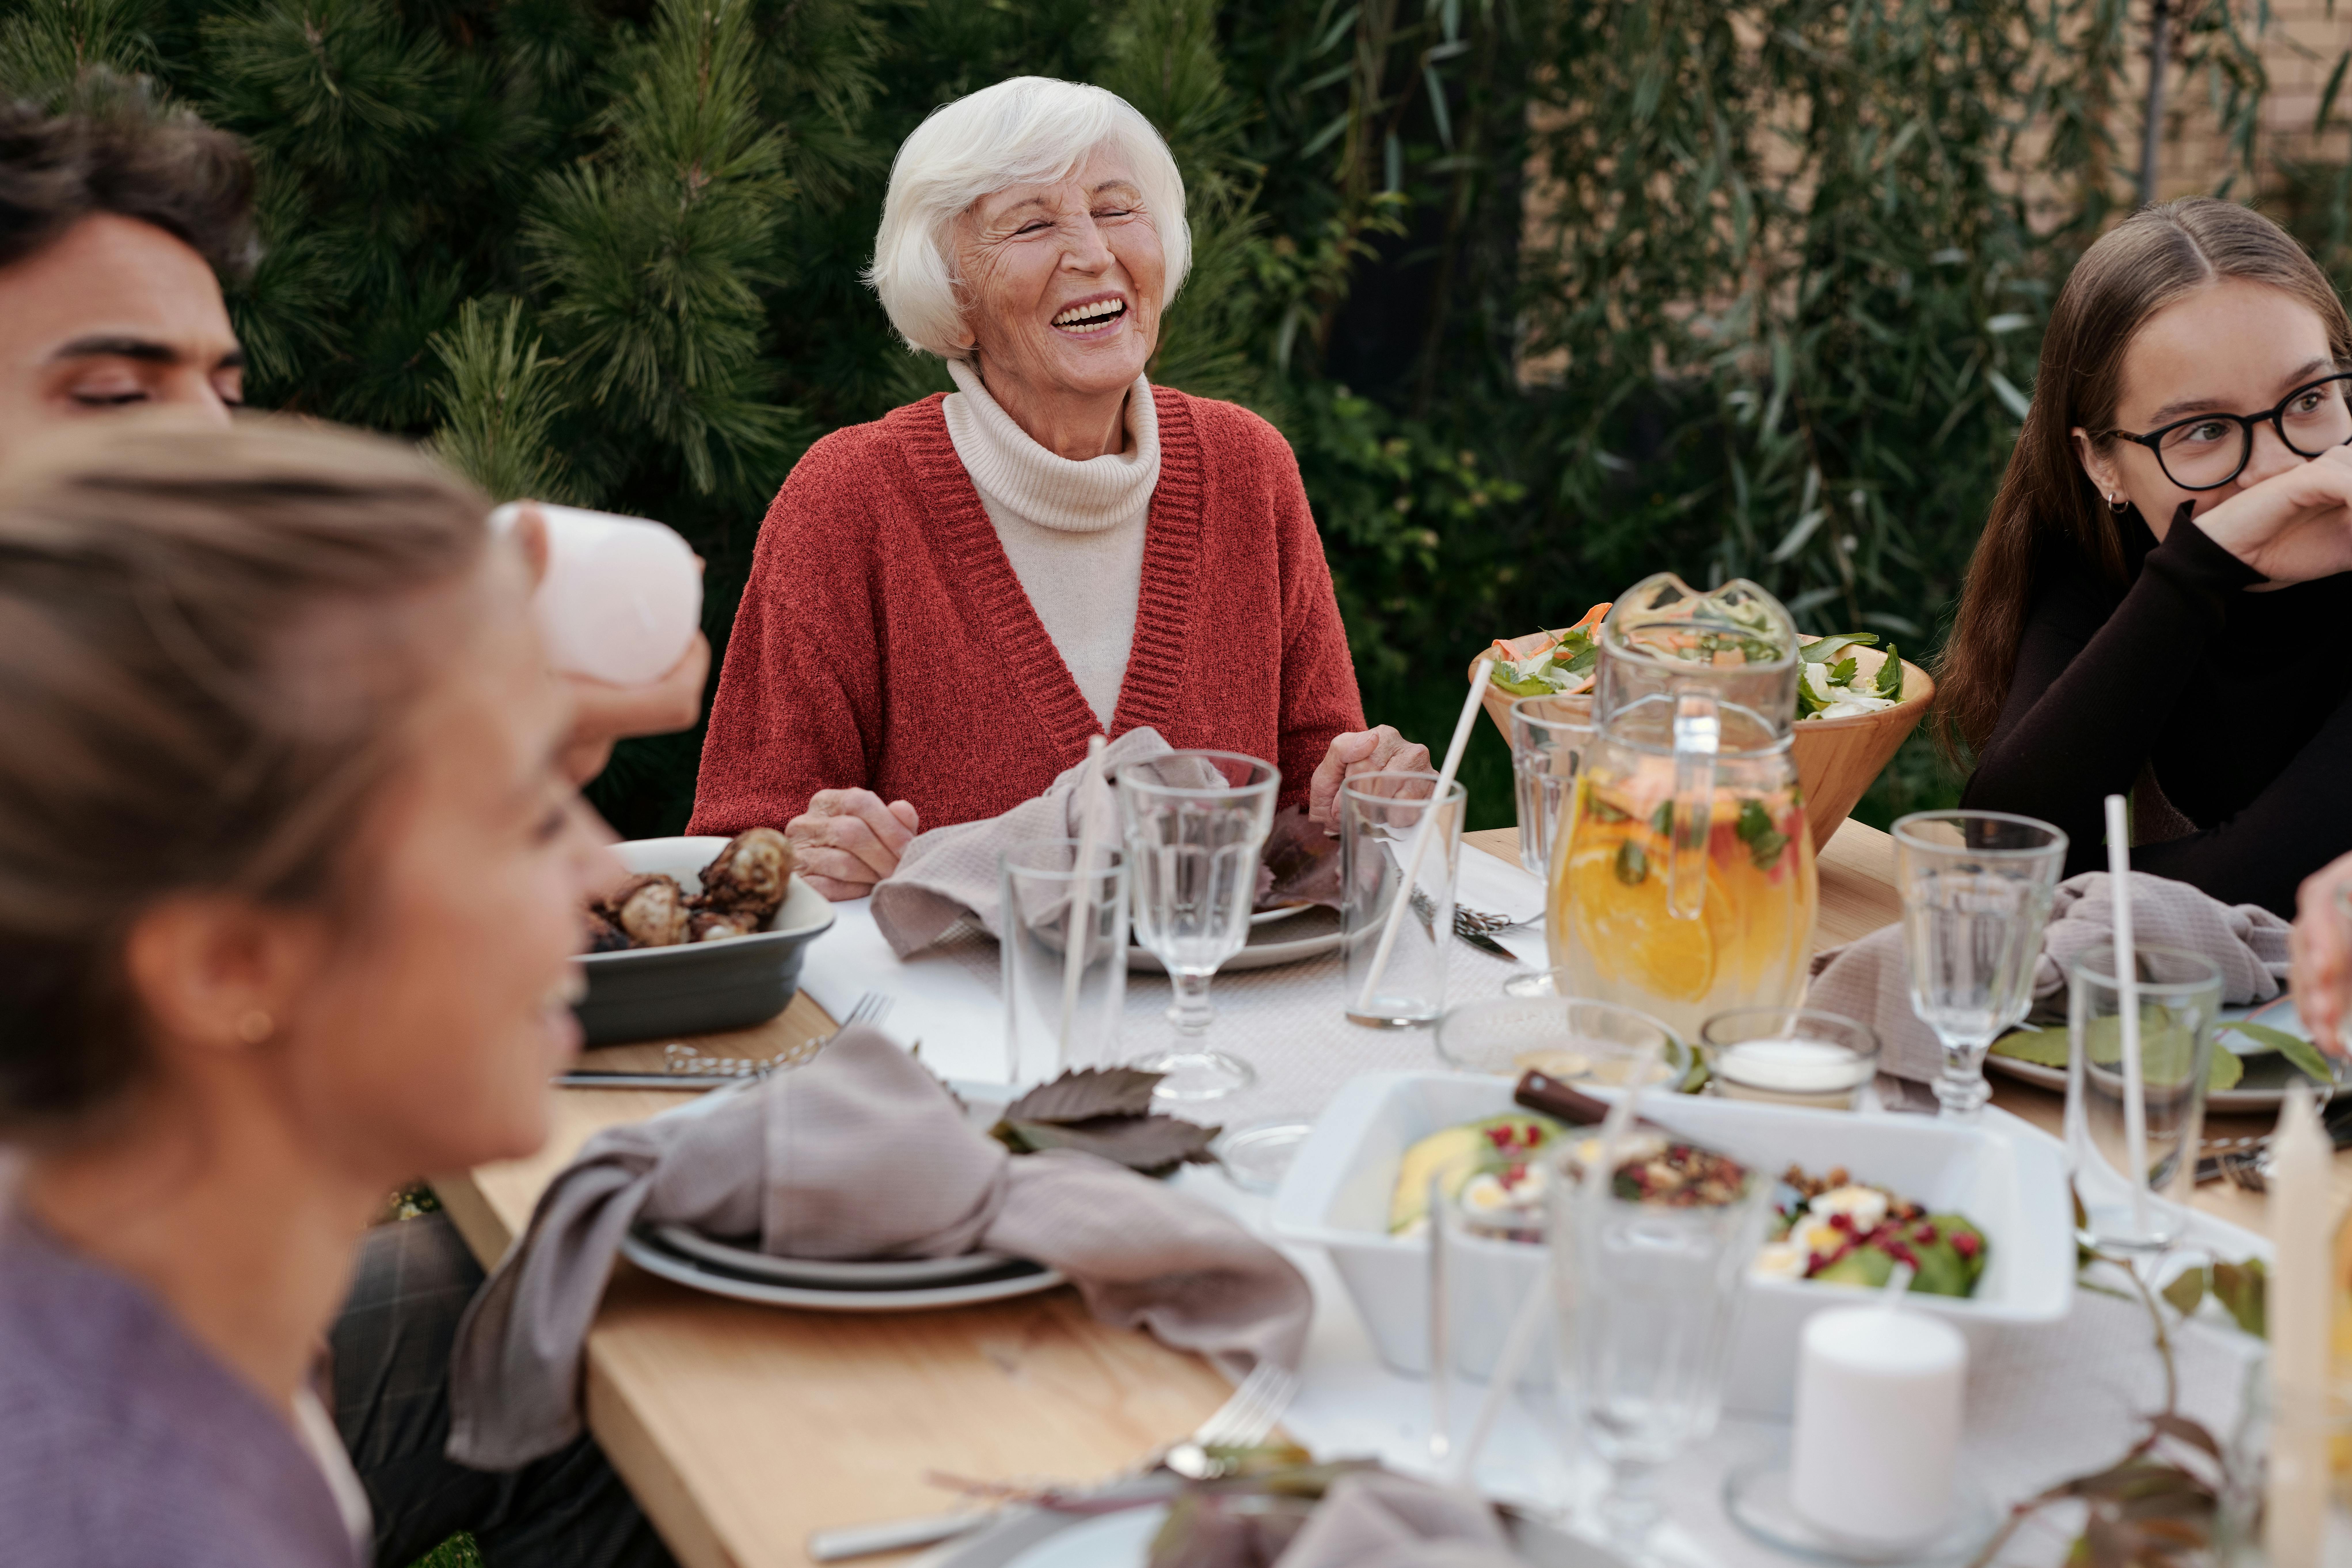 Une famille réunie autour d'une table, discutant et mangeant | Source : Pexels